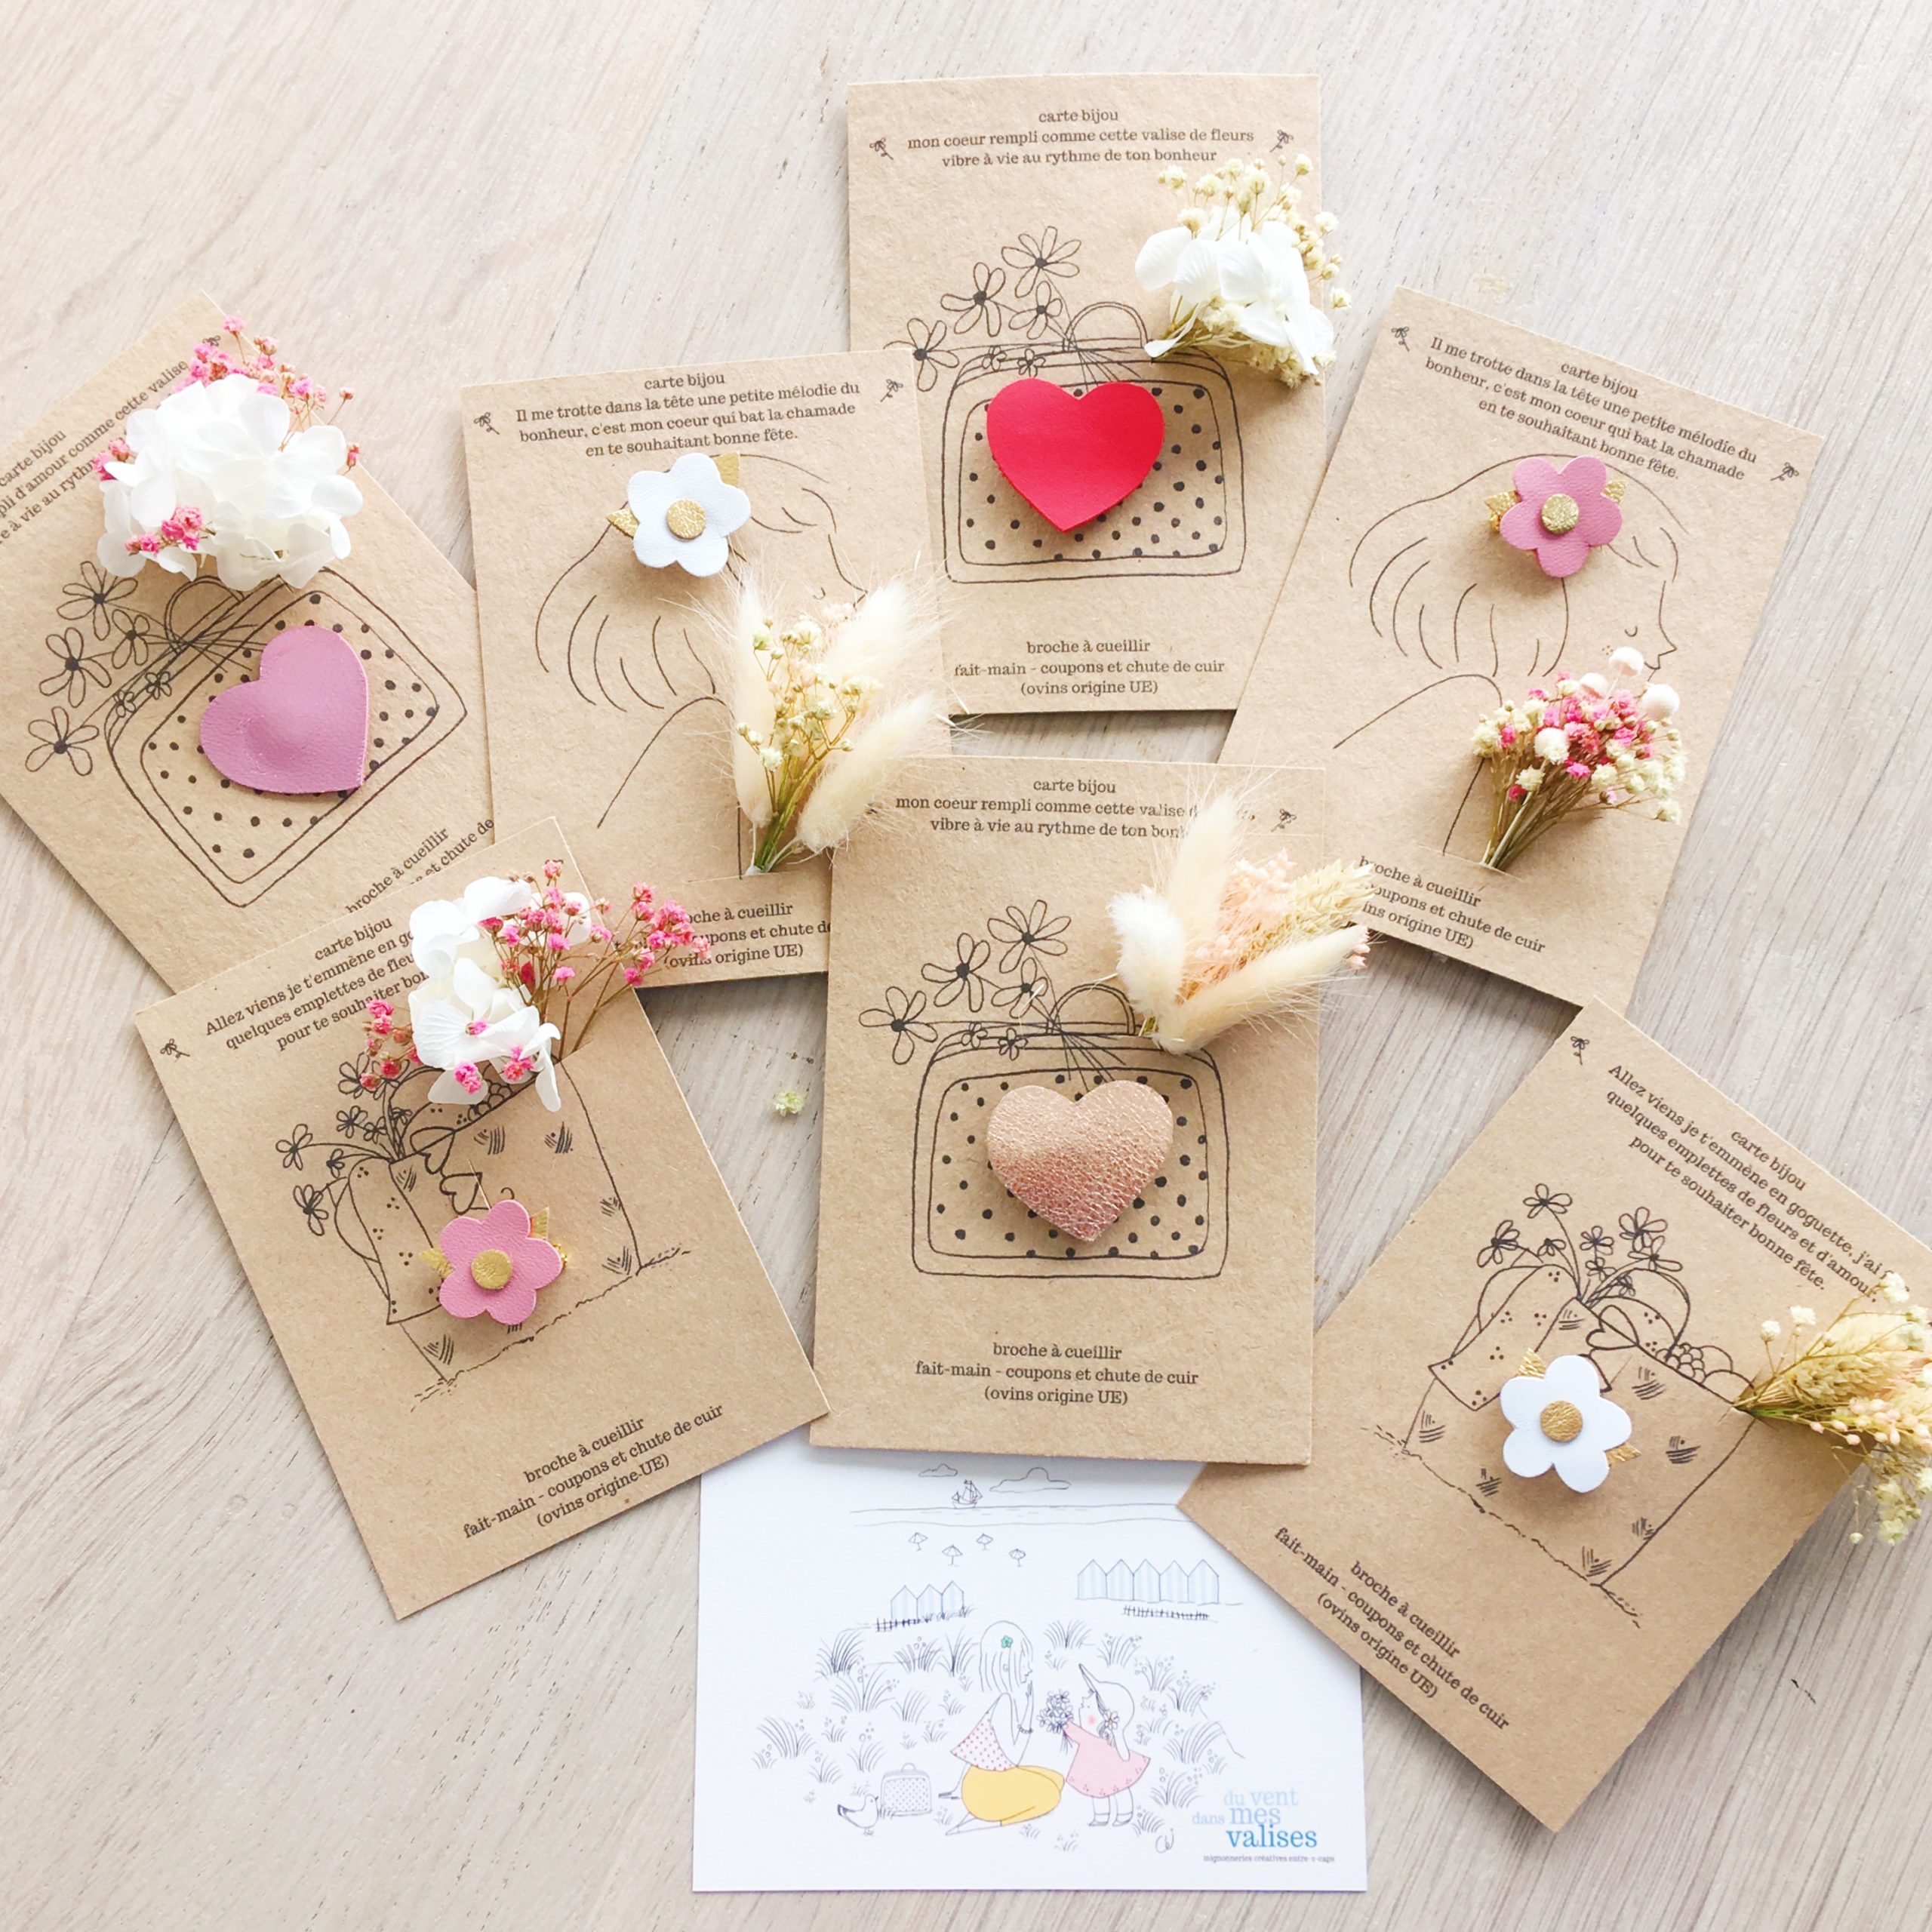 cartes bijoux florales pour la fête des mères, papeterie poétique et fleurs séchées, made in france - du vent dans mes valises